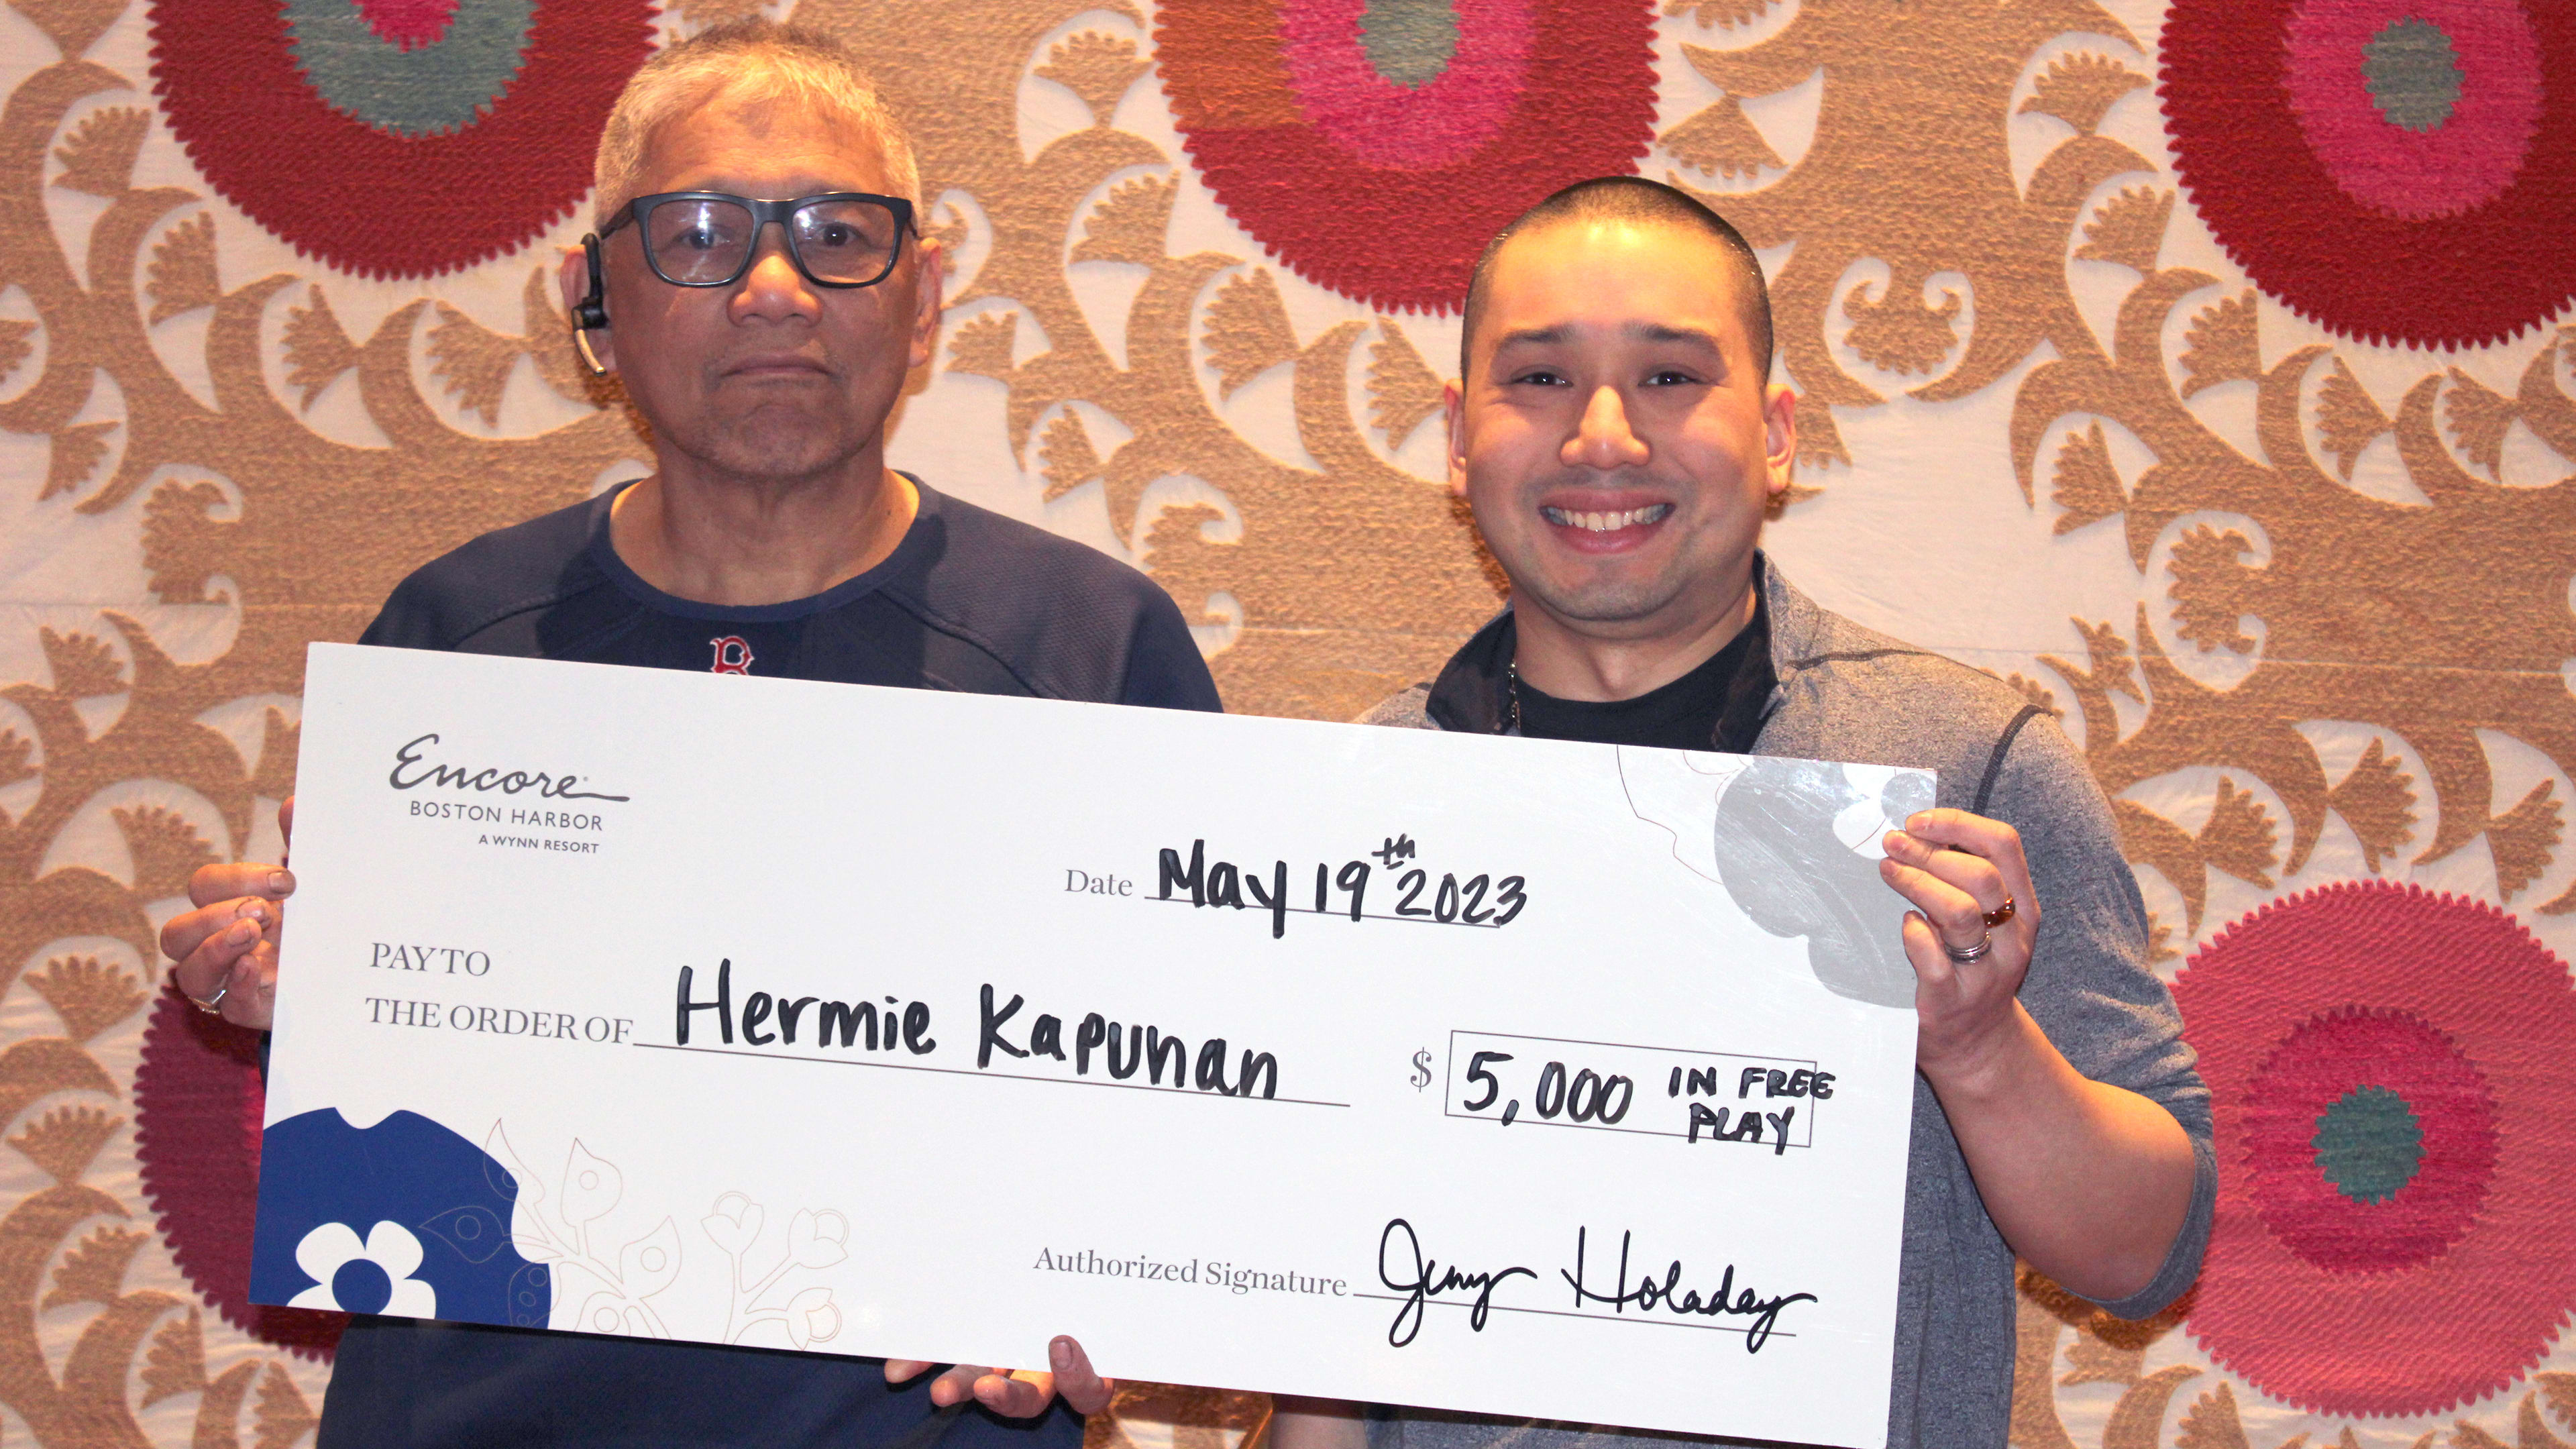 Hermie K won $5000 in free play